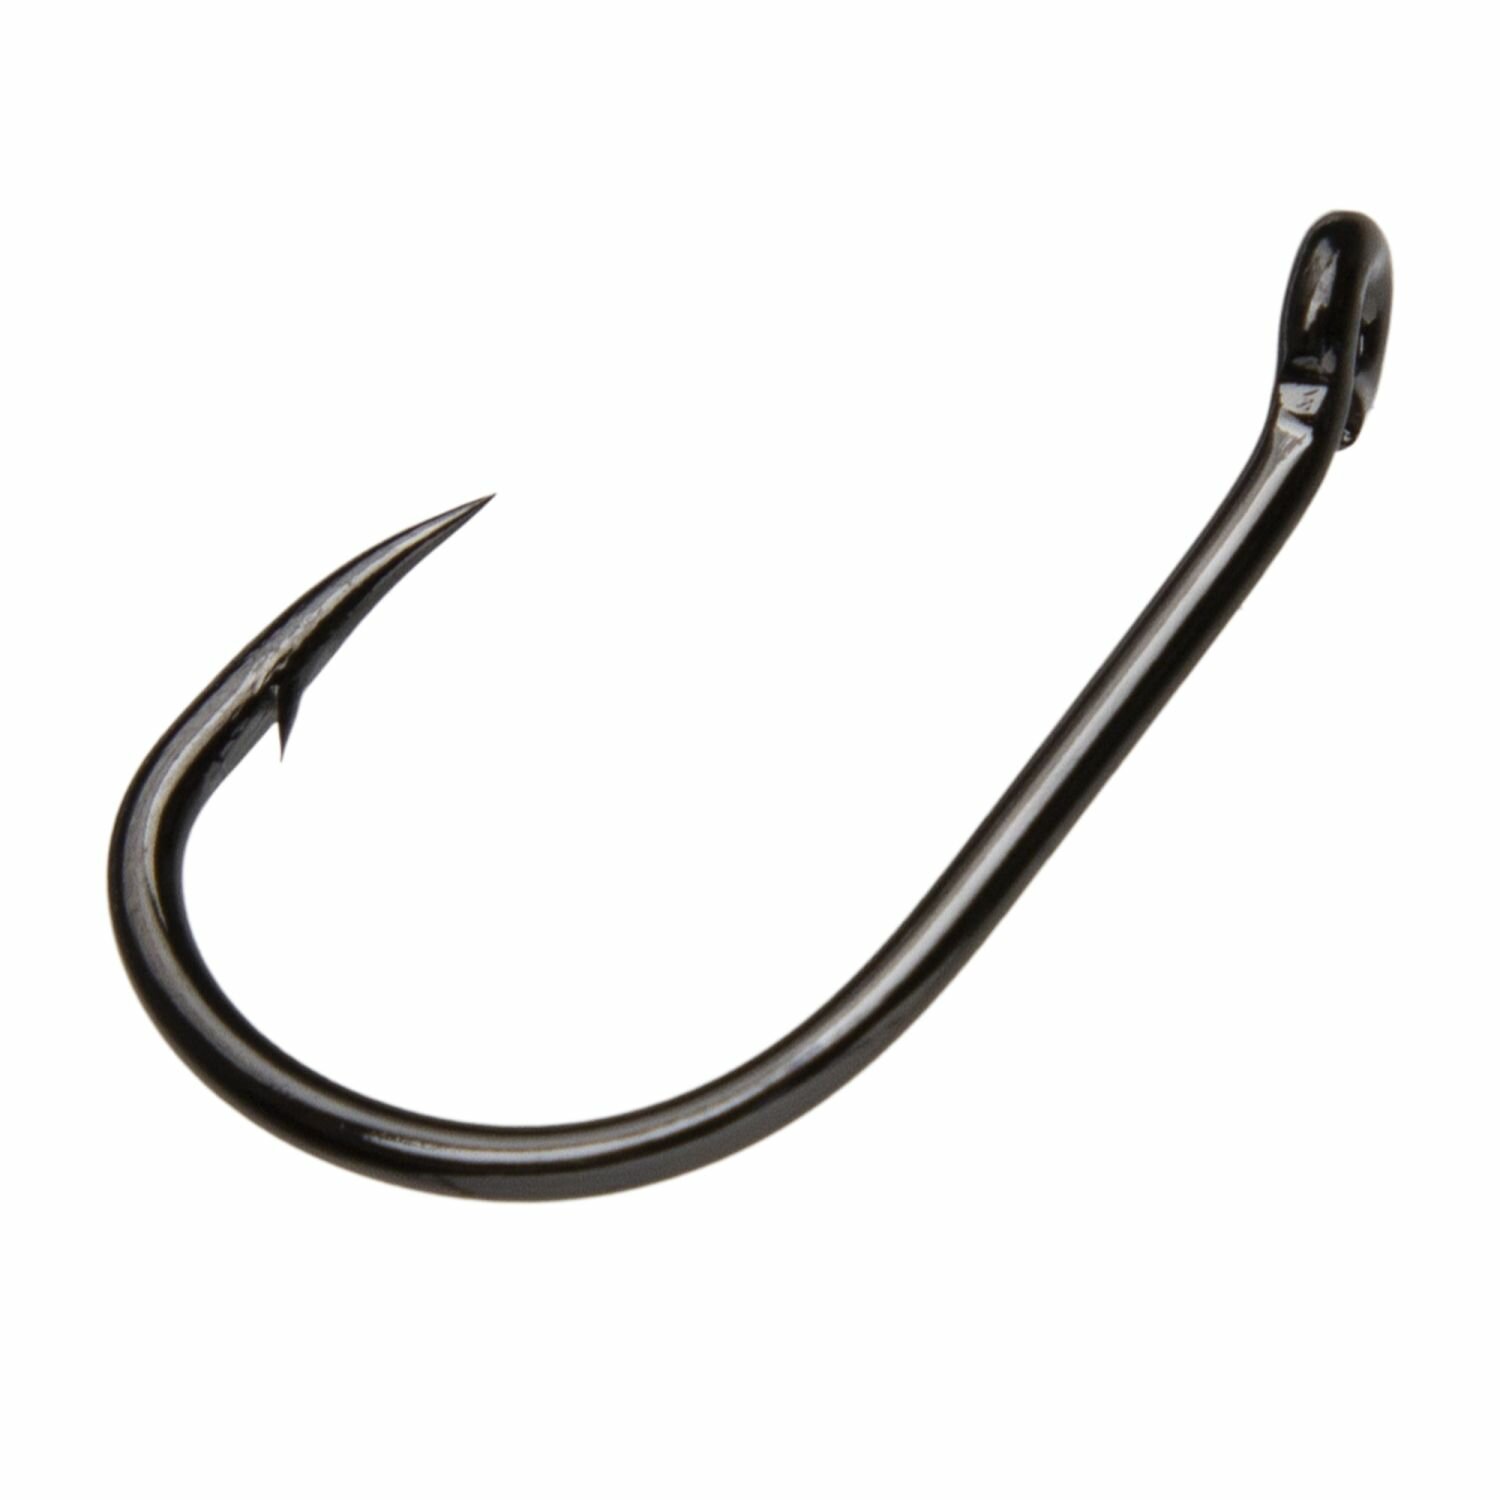 Крючок рыболовный одинарный Carp Pro Wide Gape Trophy Black Nickel #2 (10шт) для рыбалки на щуку, судака, окуня